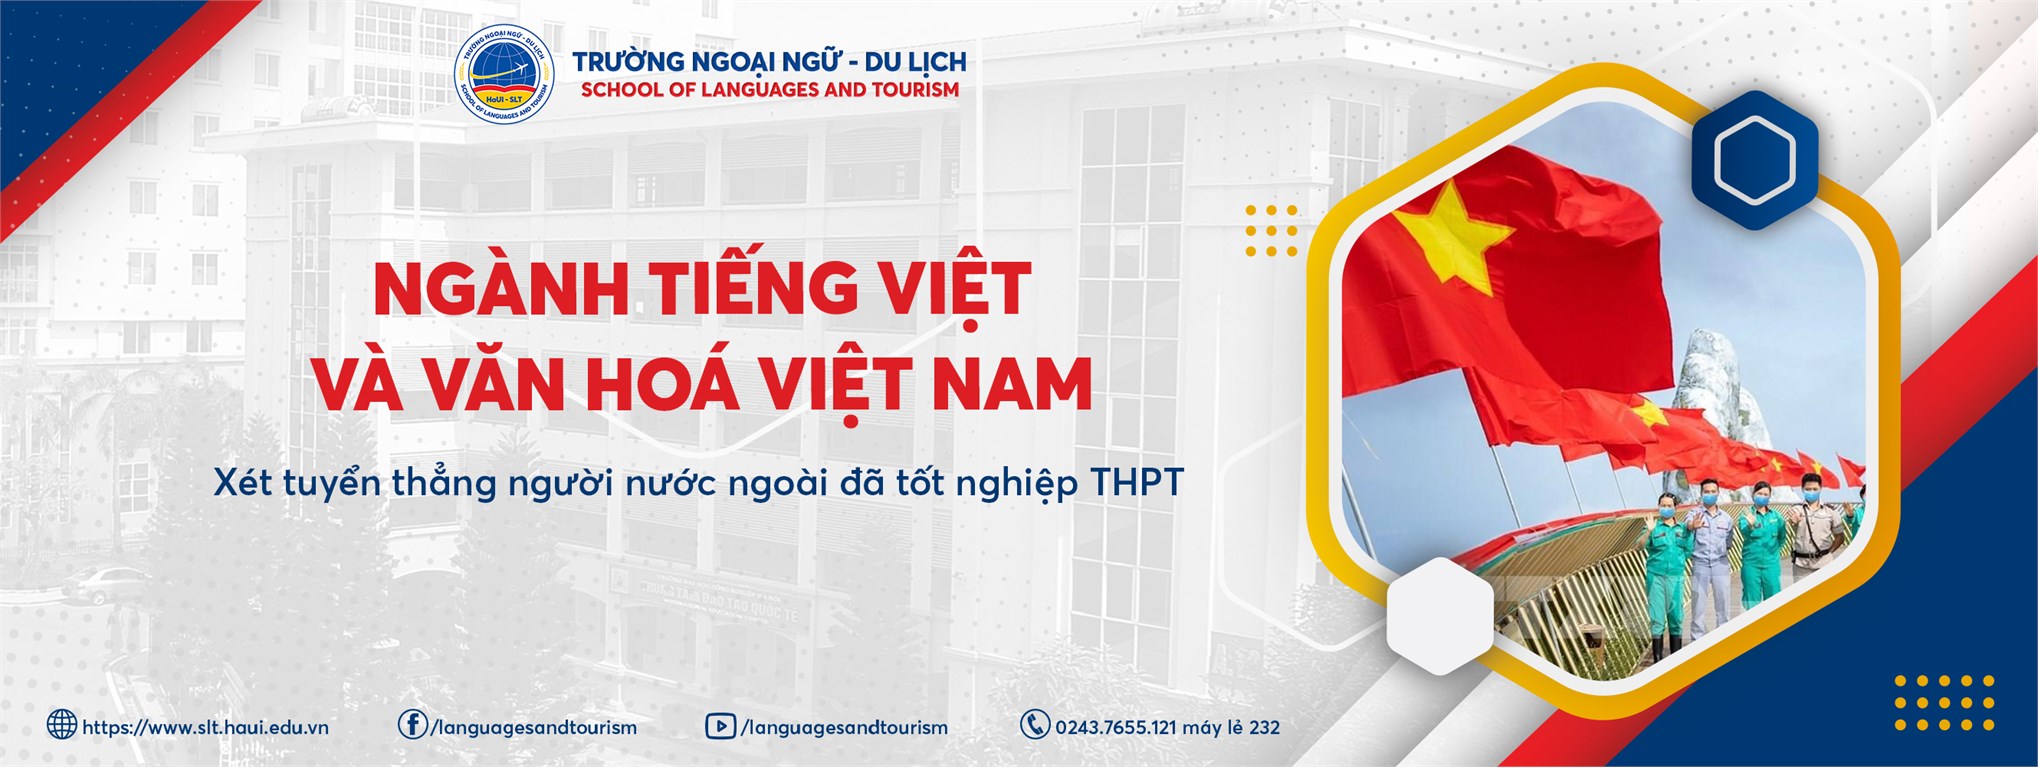 Ngành Tiếng Việt và văn hóa Việt Nam - Trường Ngoại ngữ - Du lịch